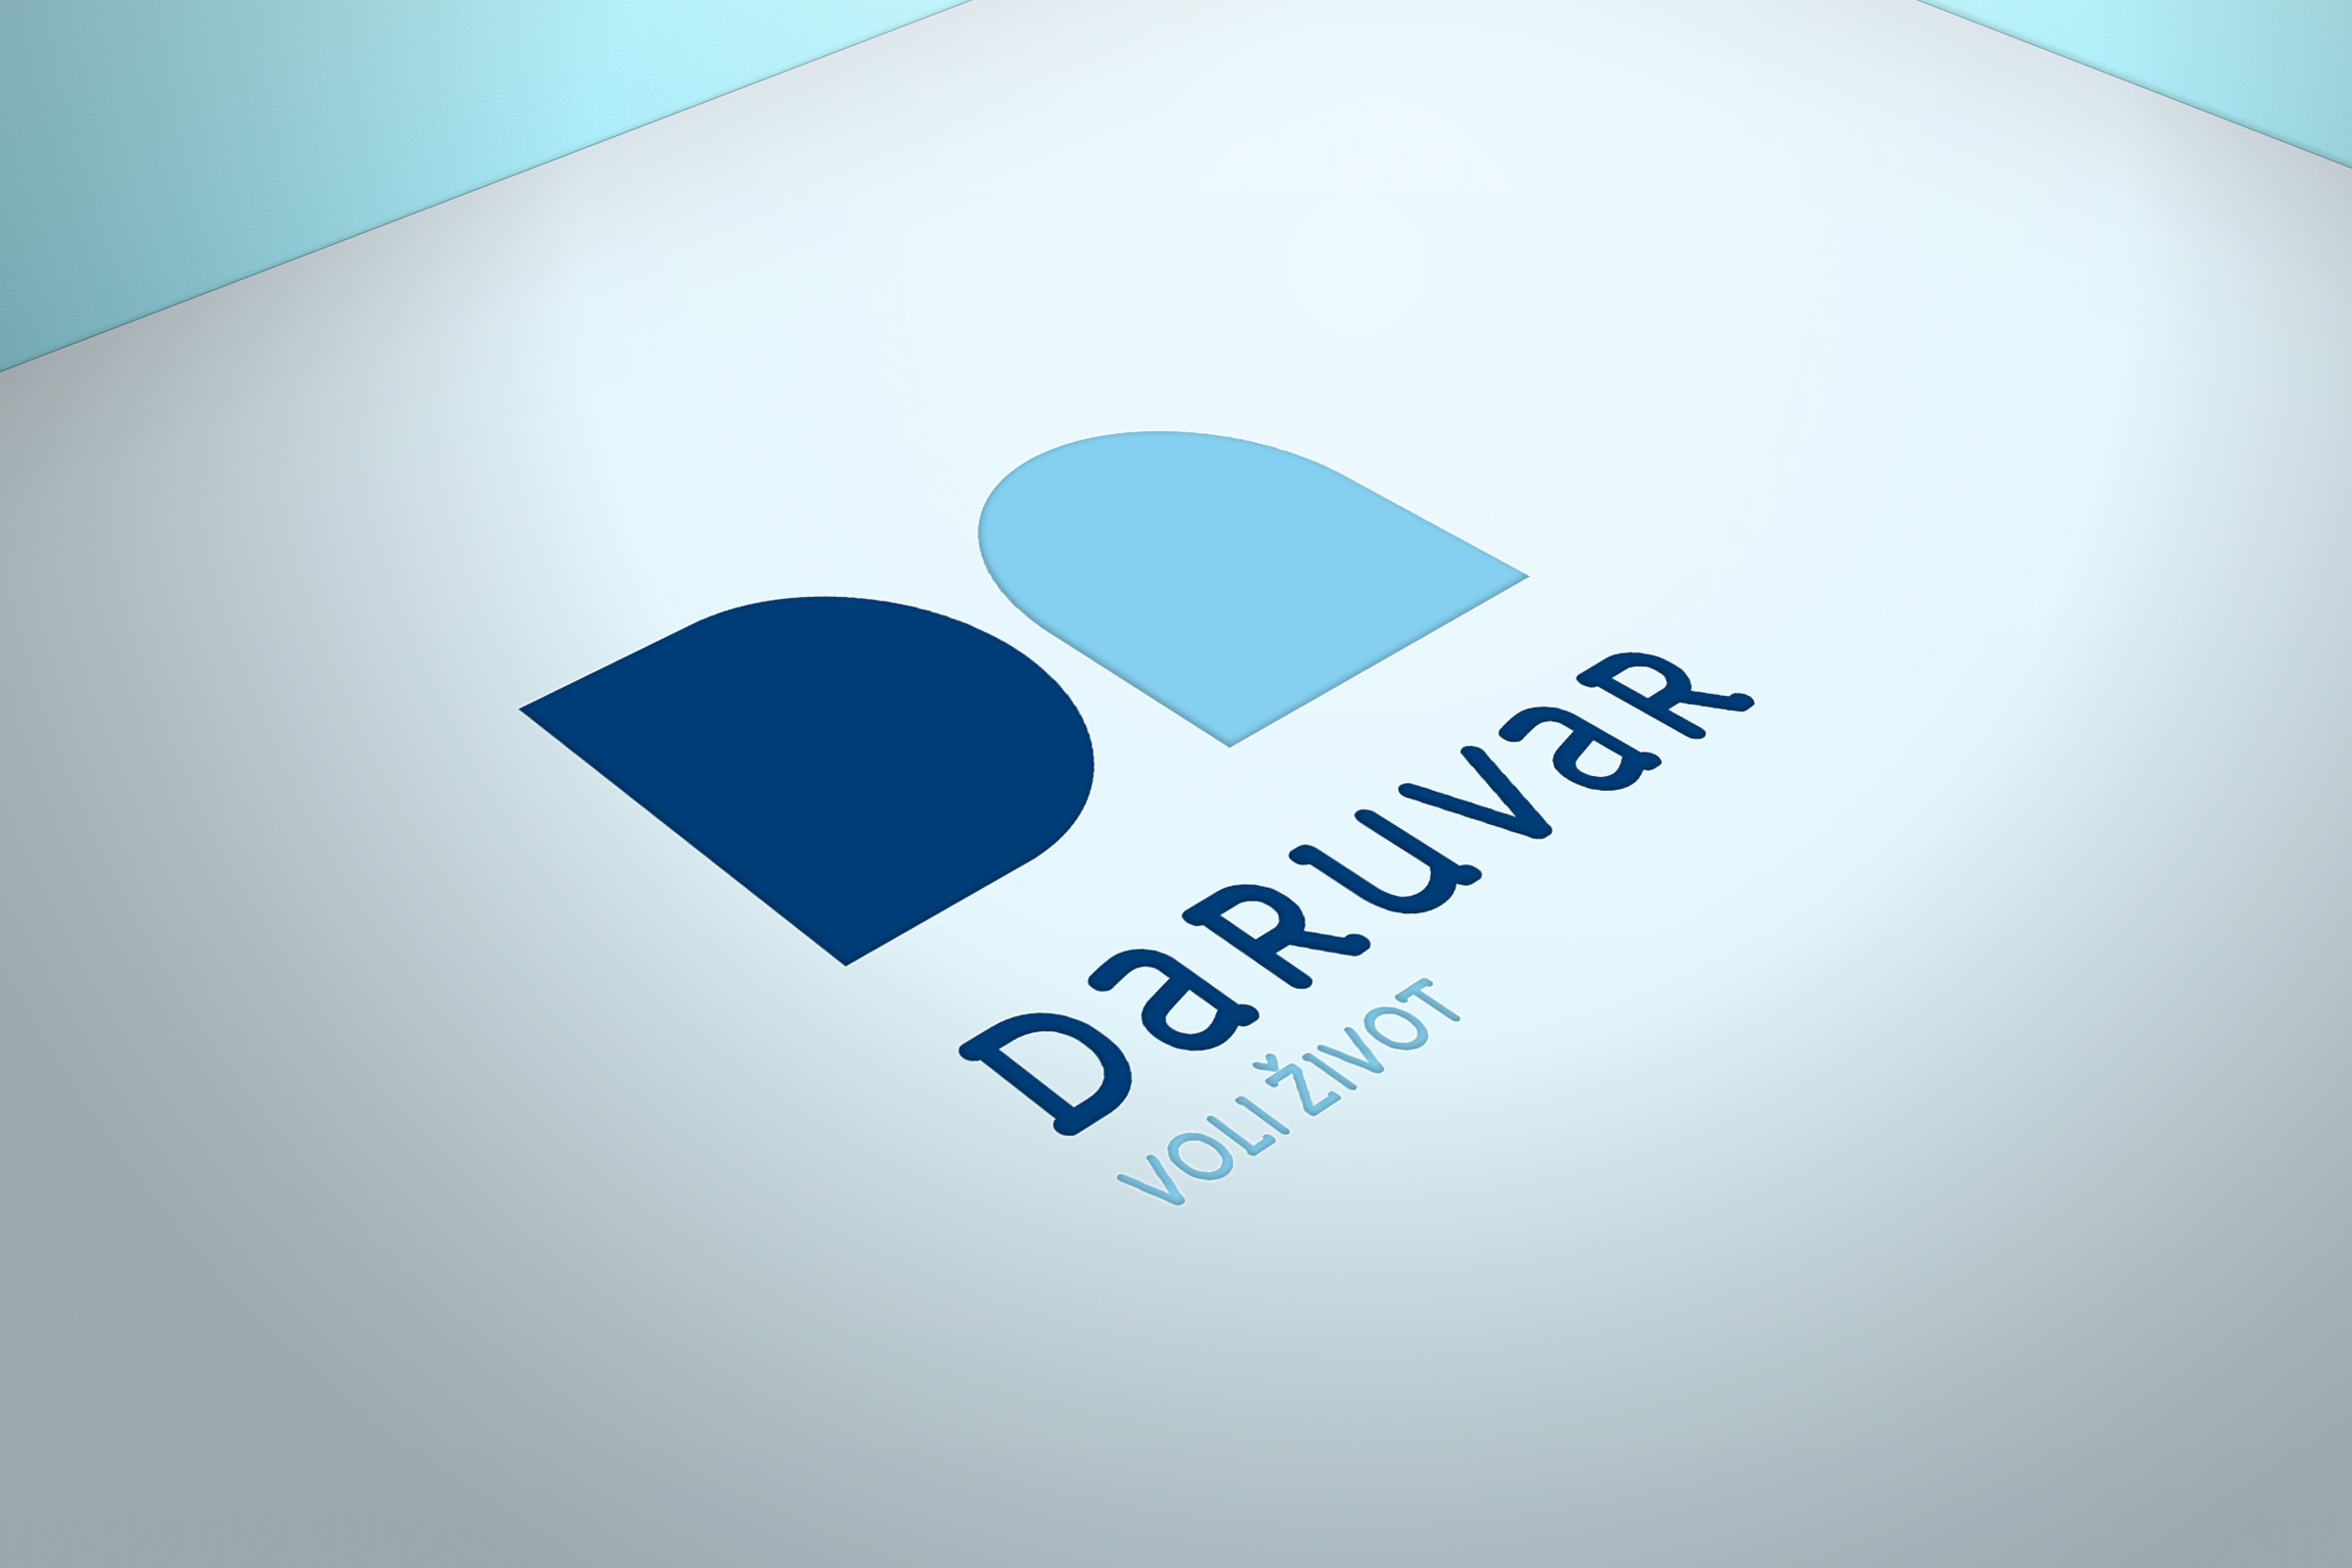 City branding of Daruvar